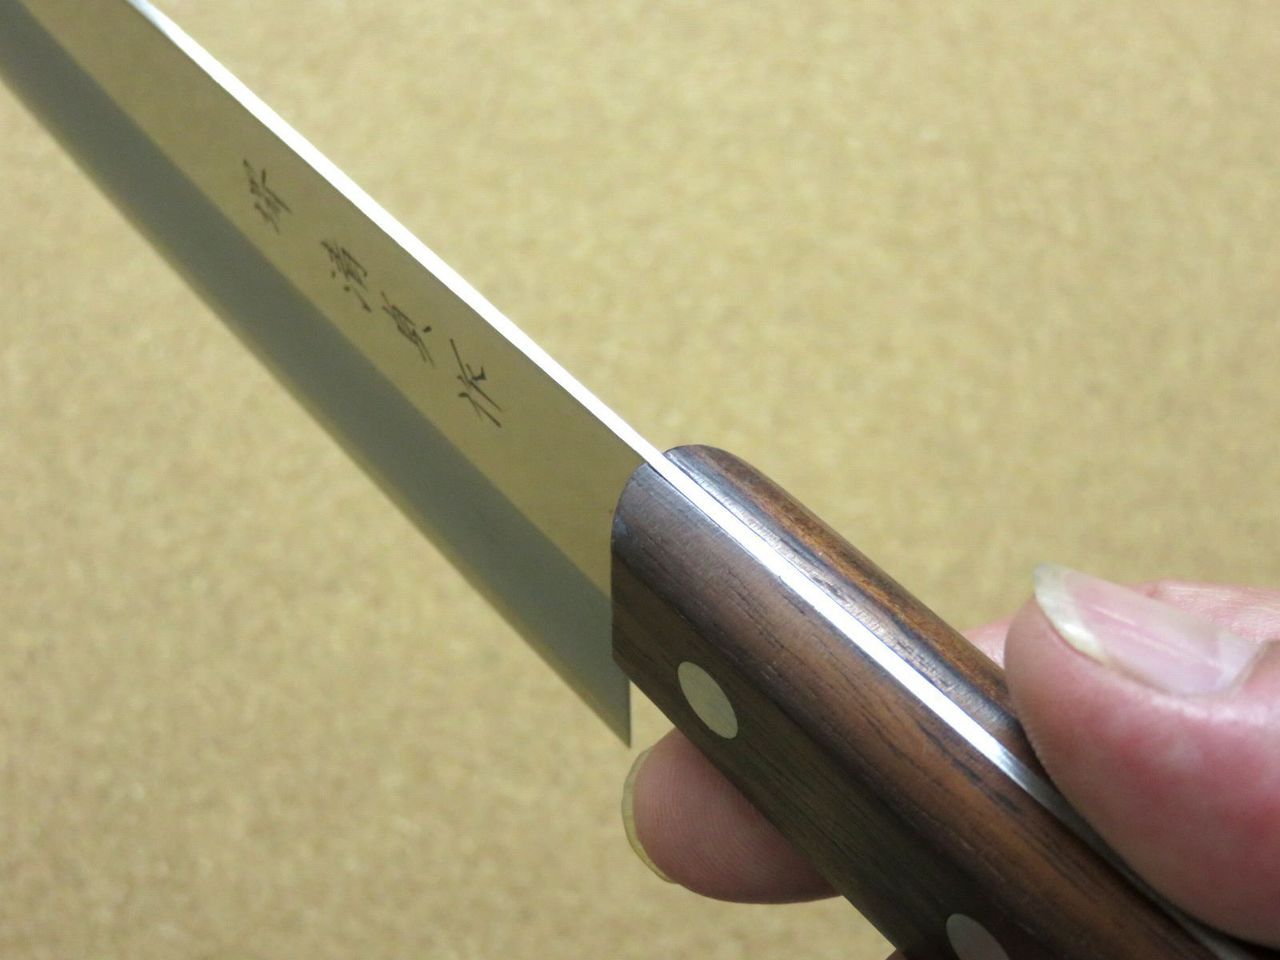 Japanese Sakai Kitchen Santoku Knife 170mm 6.7 inch Lightweight 80g SEKI JAPAN